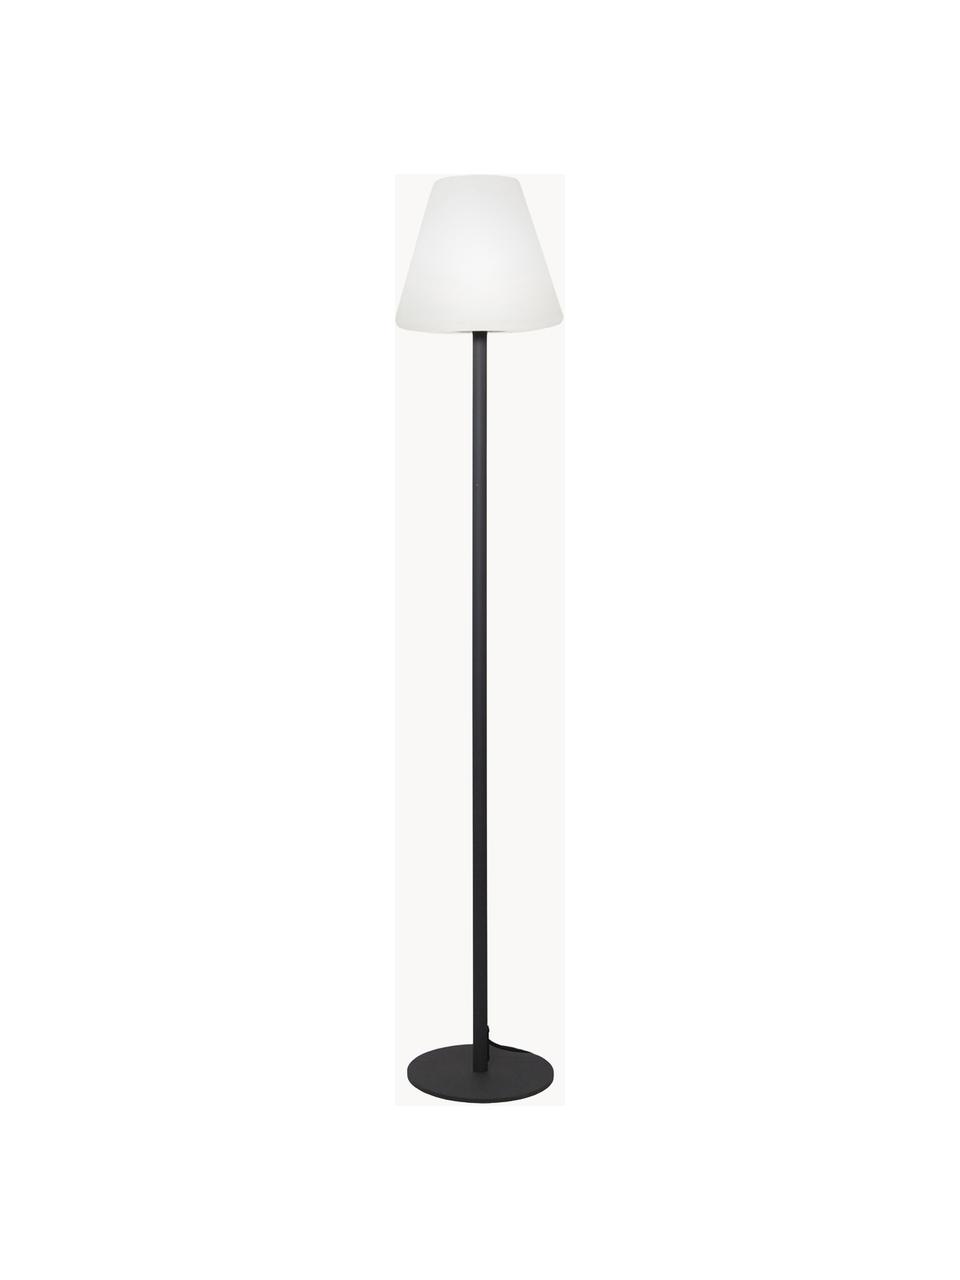 Outdoor LED vloerlamp Gardenlight met stekker, Lampenkap: kunststof, Lampvoet: gecoat metaal, Wit, antraciet, Ø 28 x H 150 cm